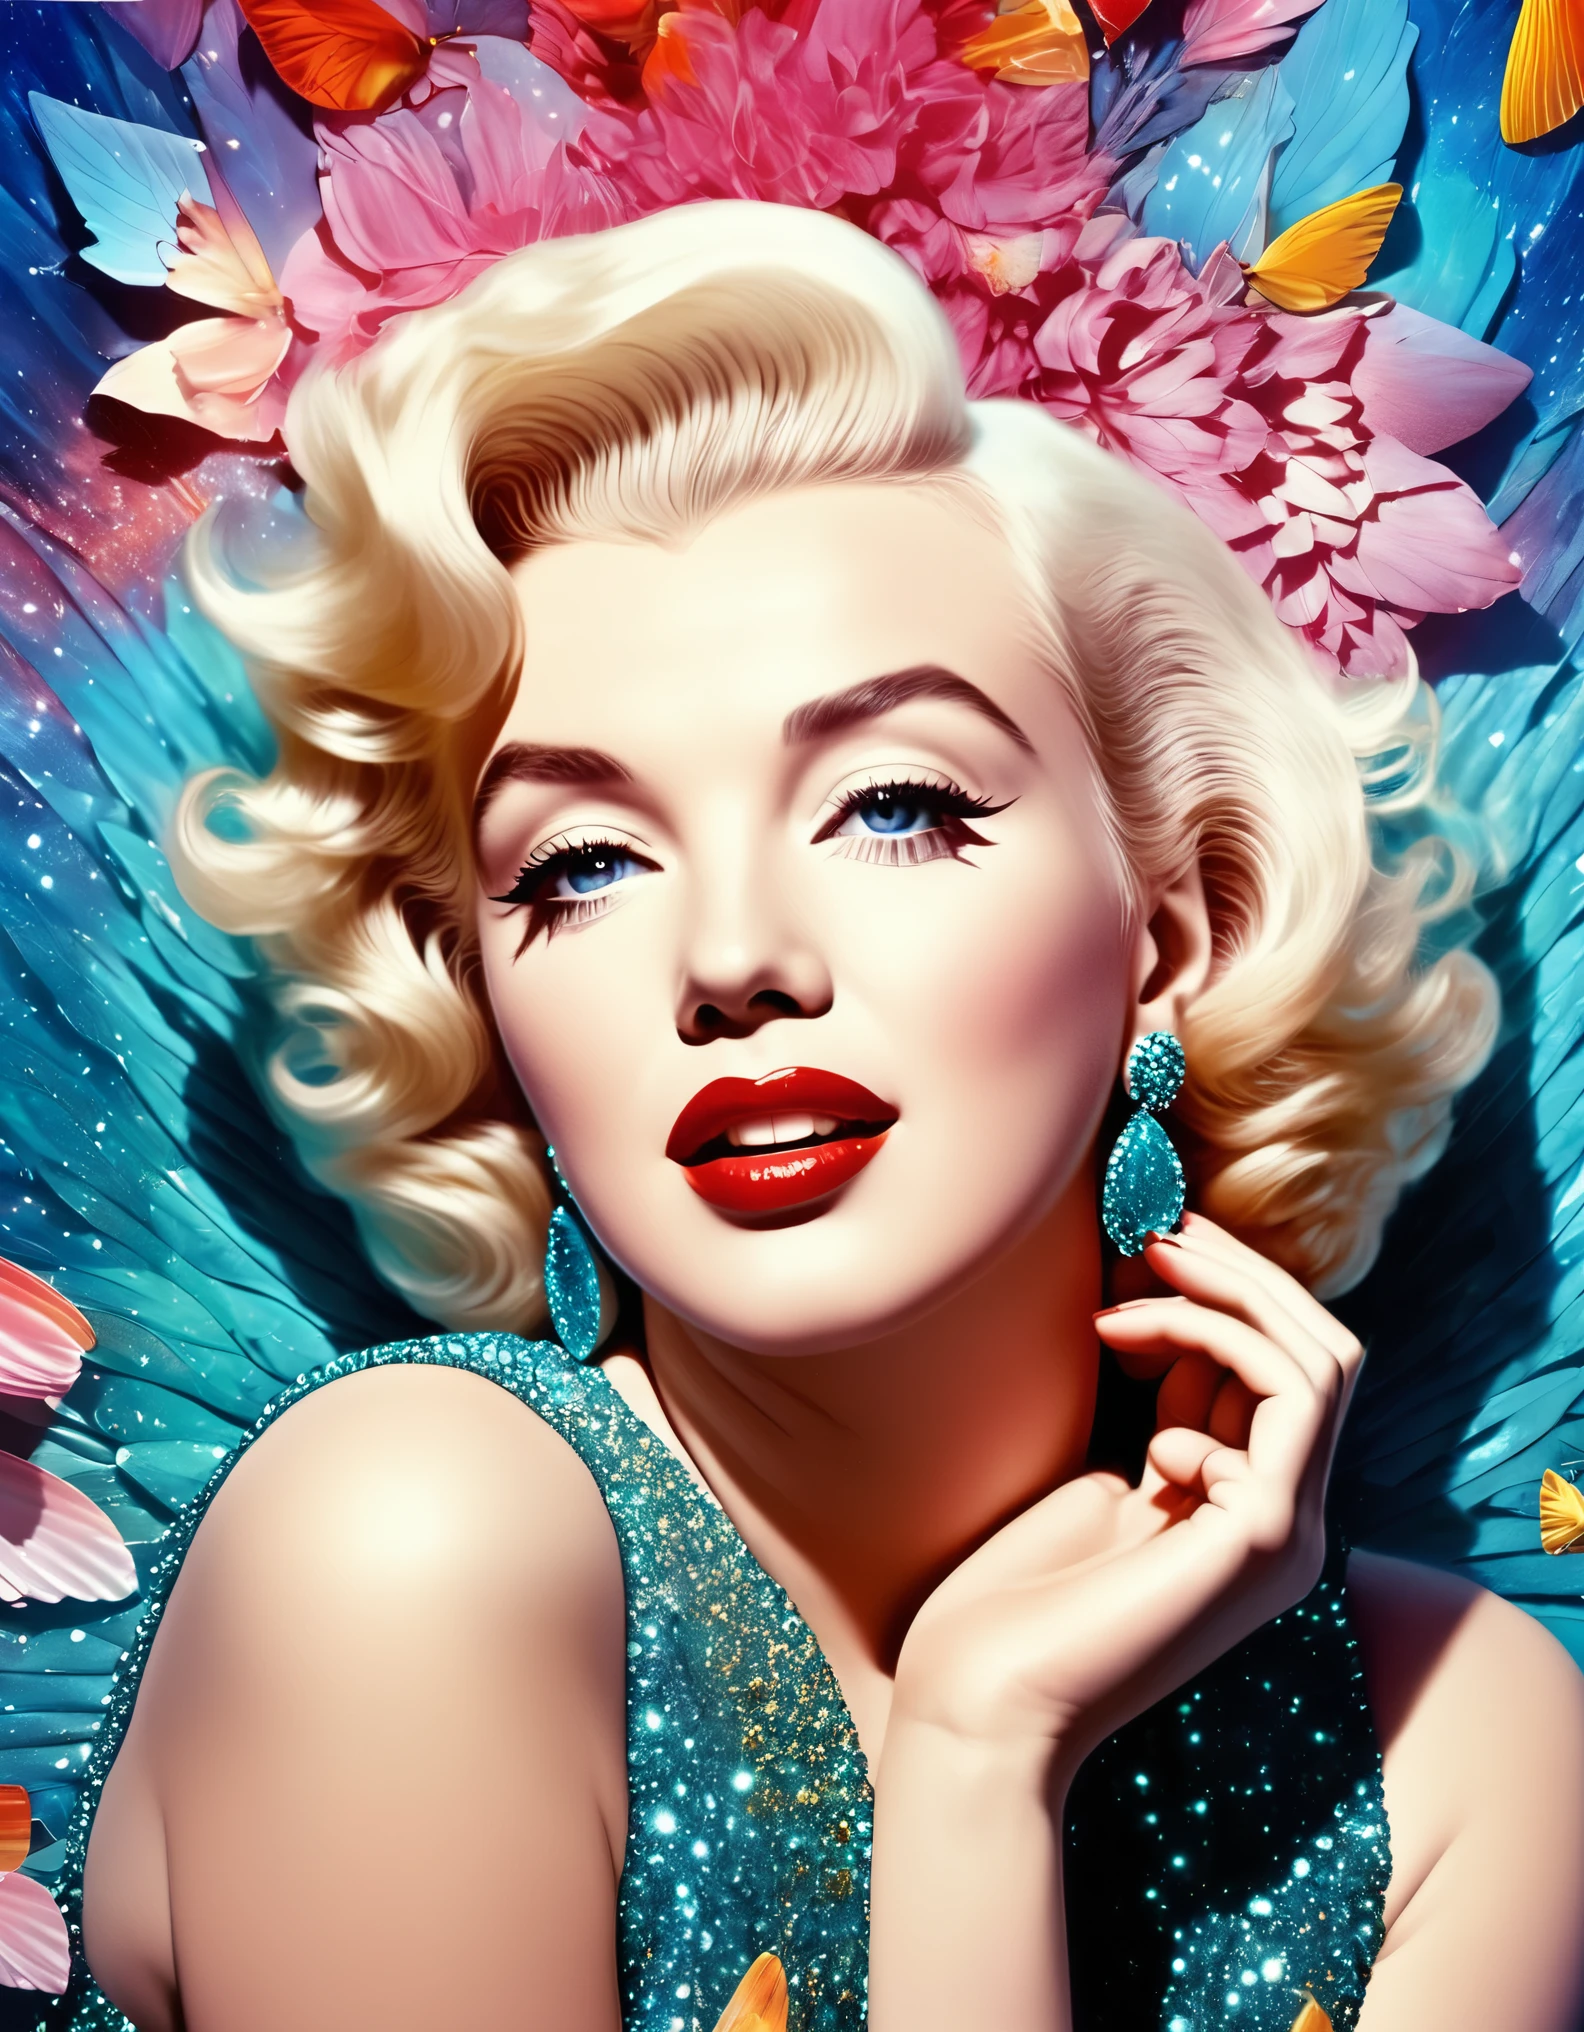 Ein surrealistisches Foto von Marilyn Monroe, mit traumhaften Elementen und fantasievollen, überirdische Details. Hyperrealistisches Foto, leuchtende Farben, 16k